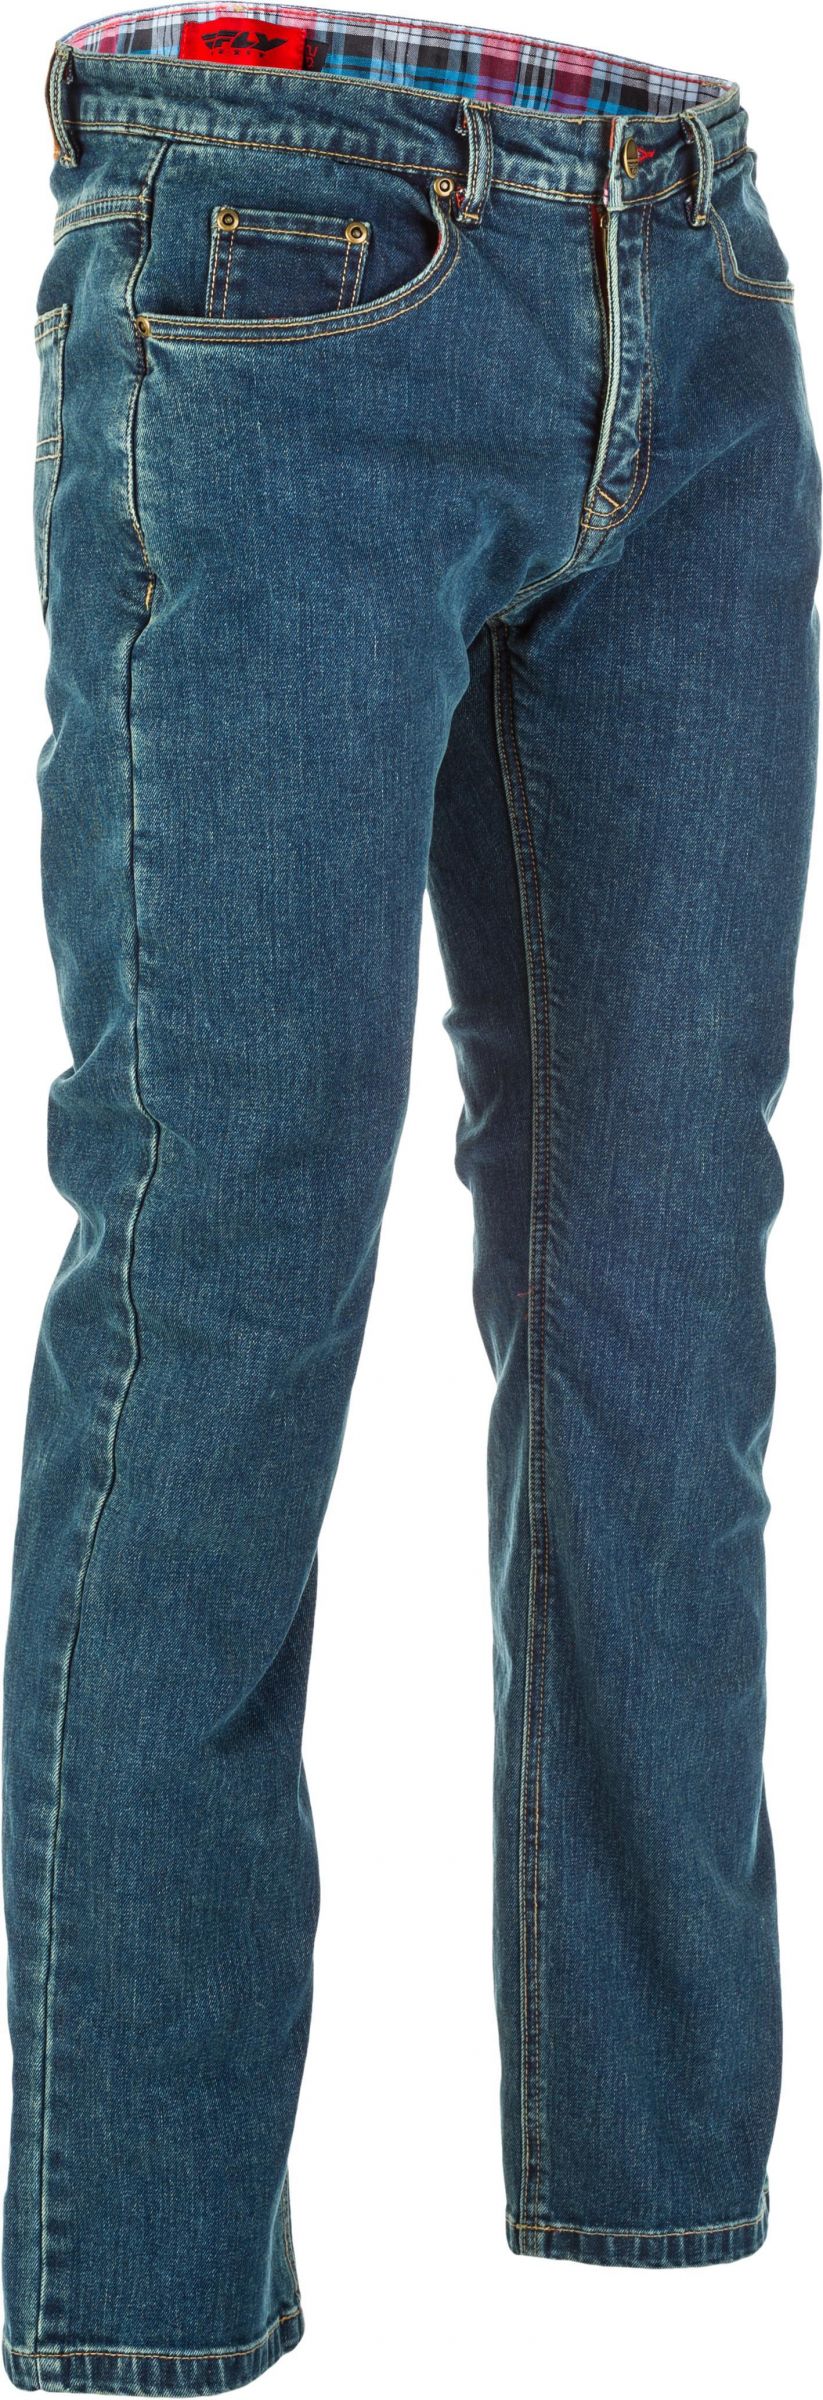 8RQT-FL-6049-478-30436TALL Resistance Jeans